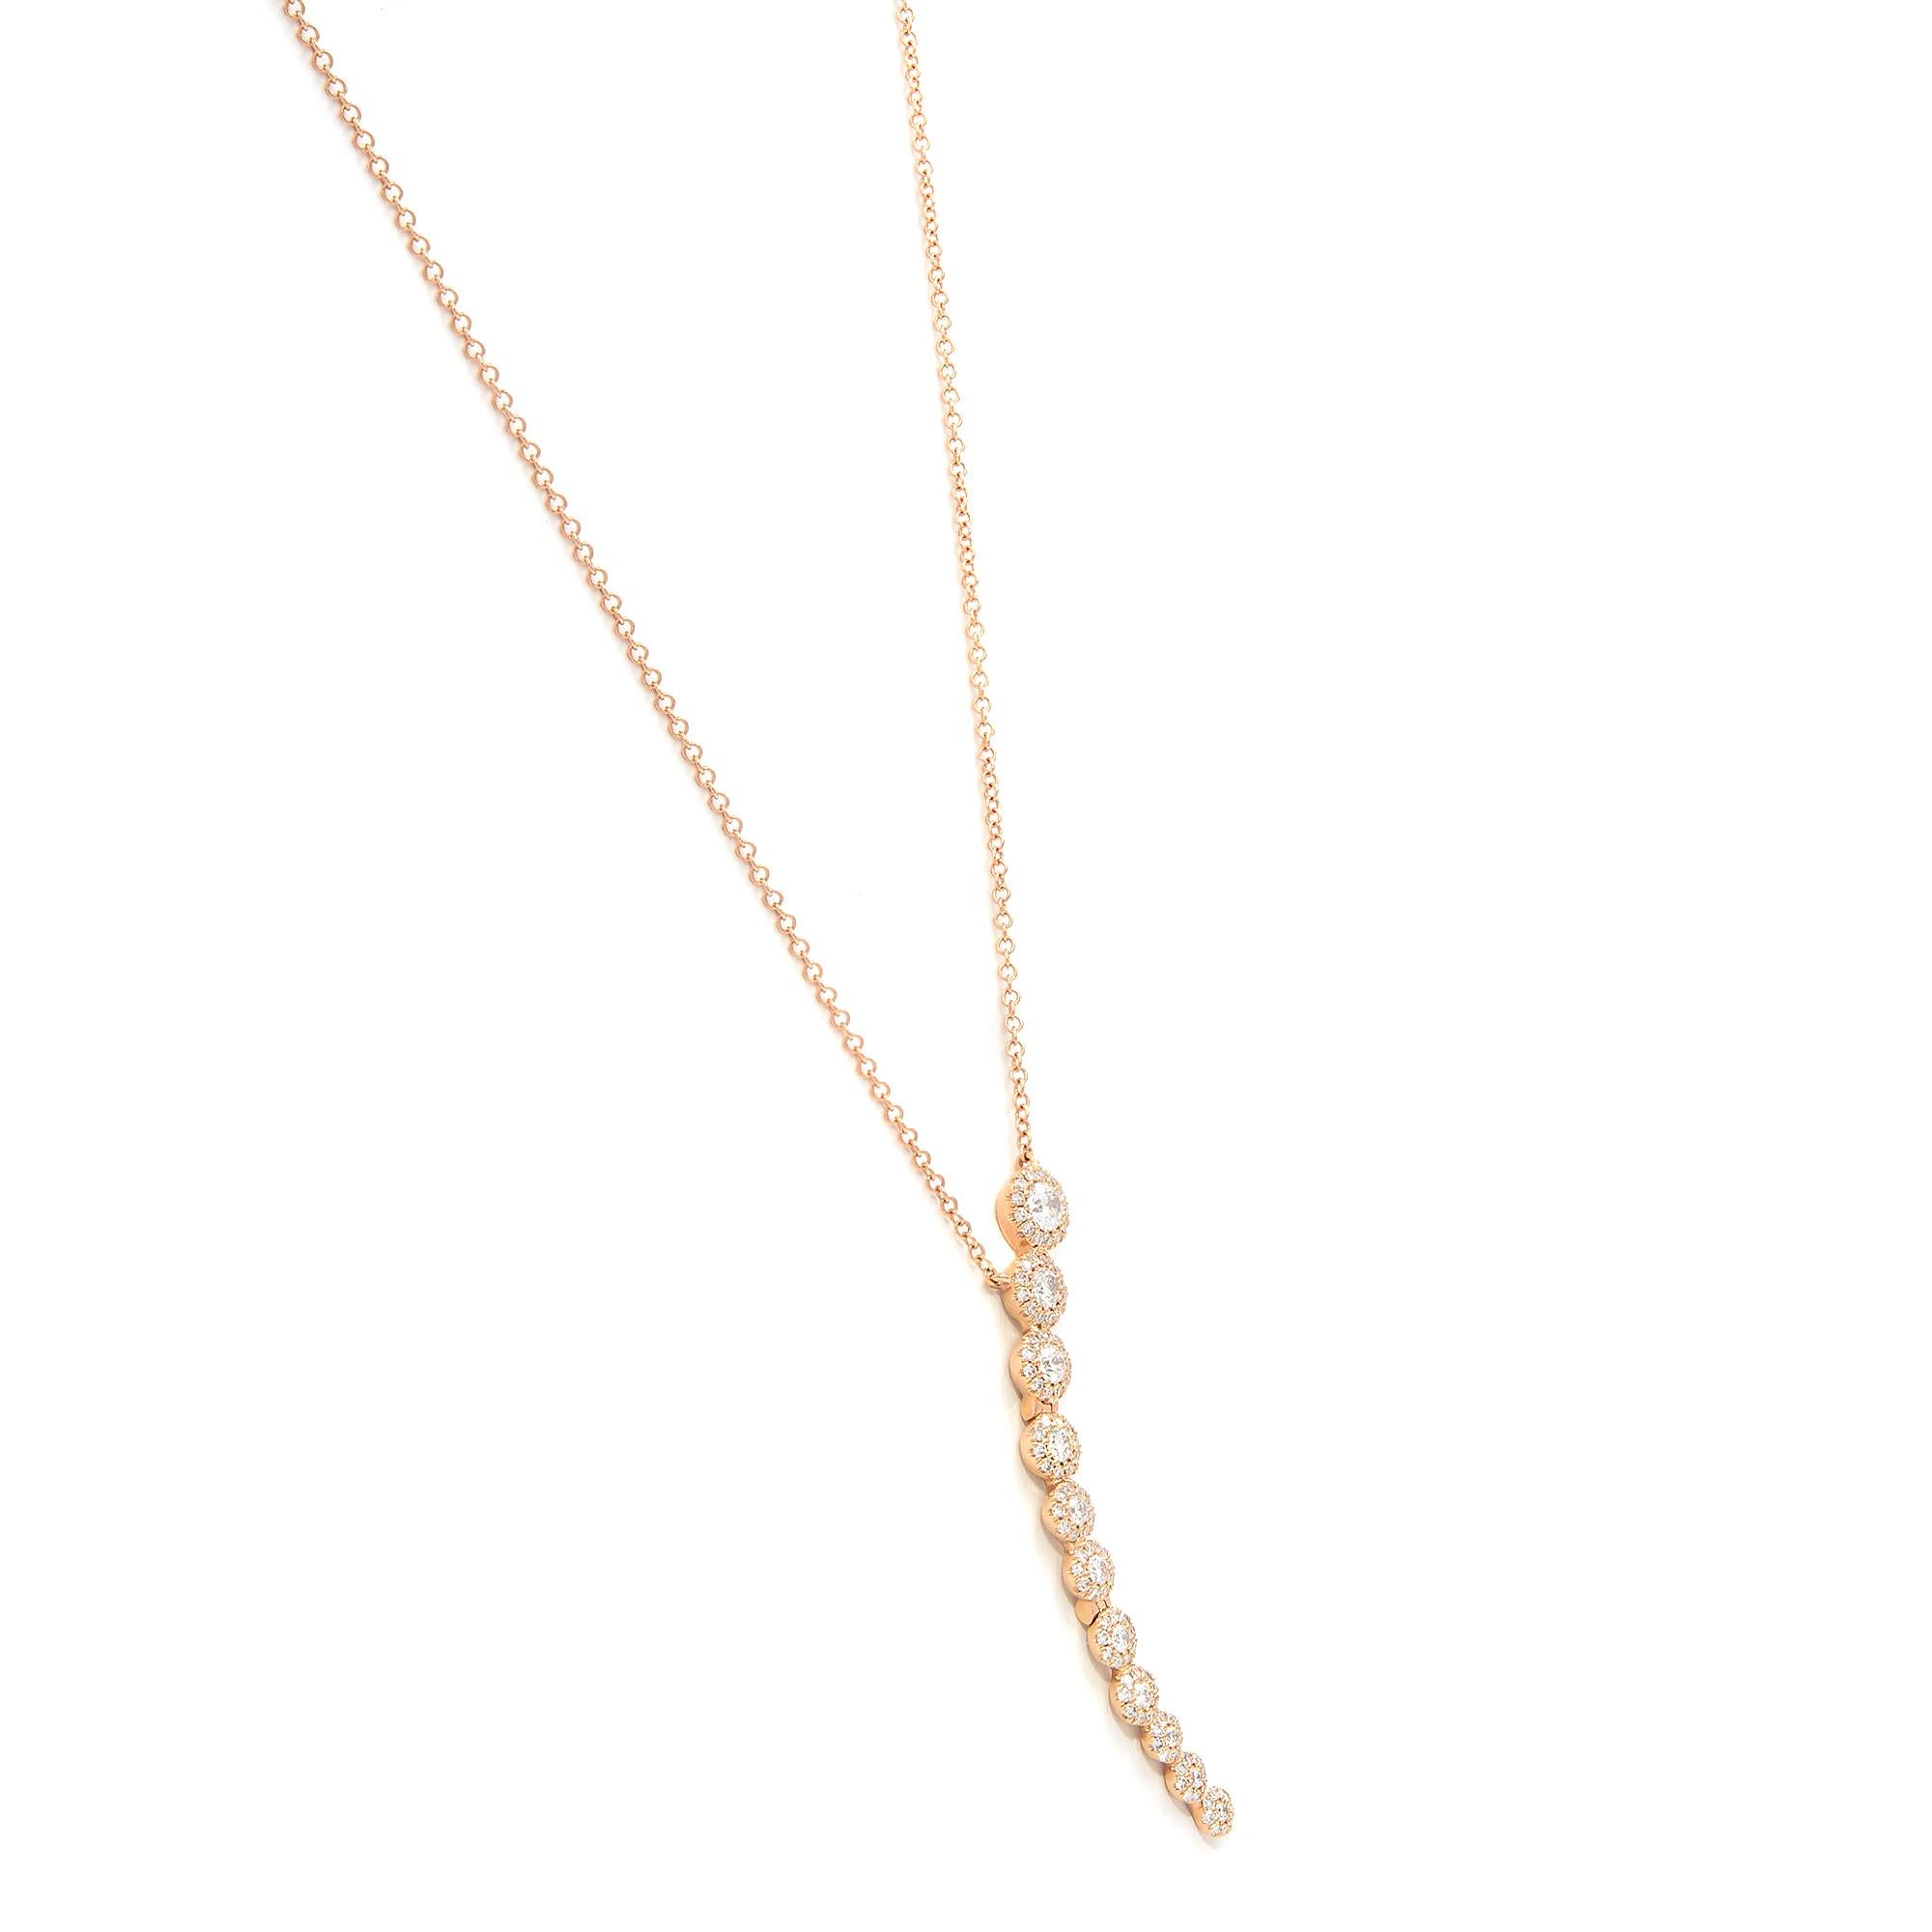 Round Cut Rachel Koen Crescent Pendant Necklace 14K Rose Gold 0.63 Cttw For Sale